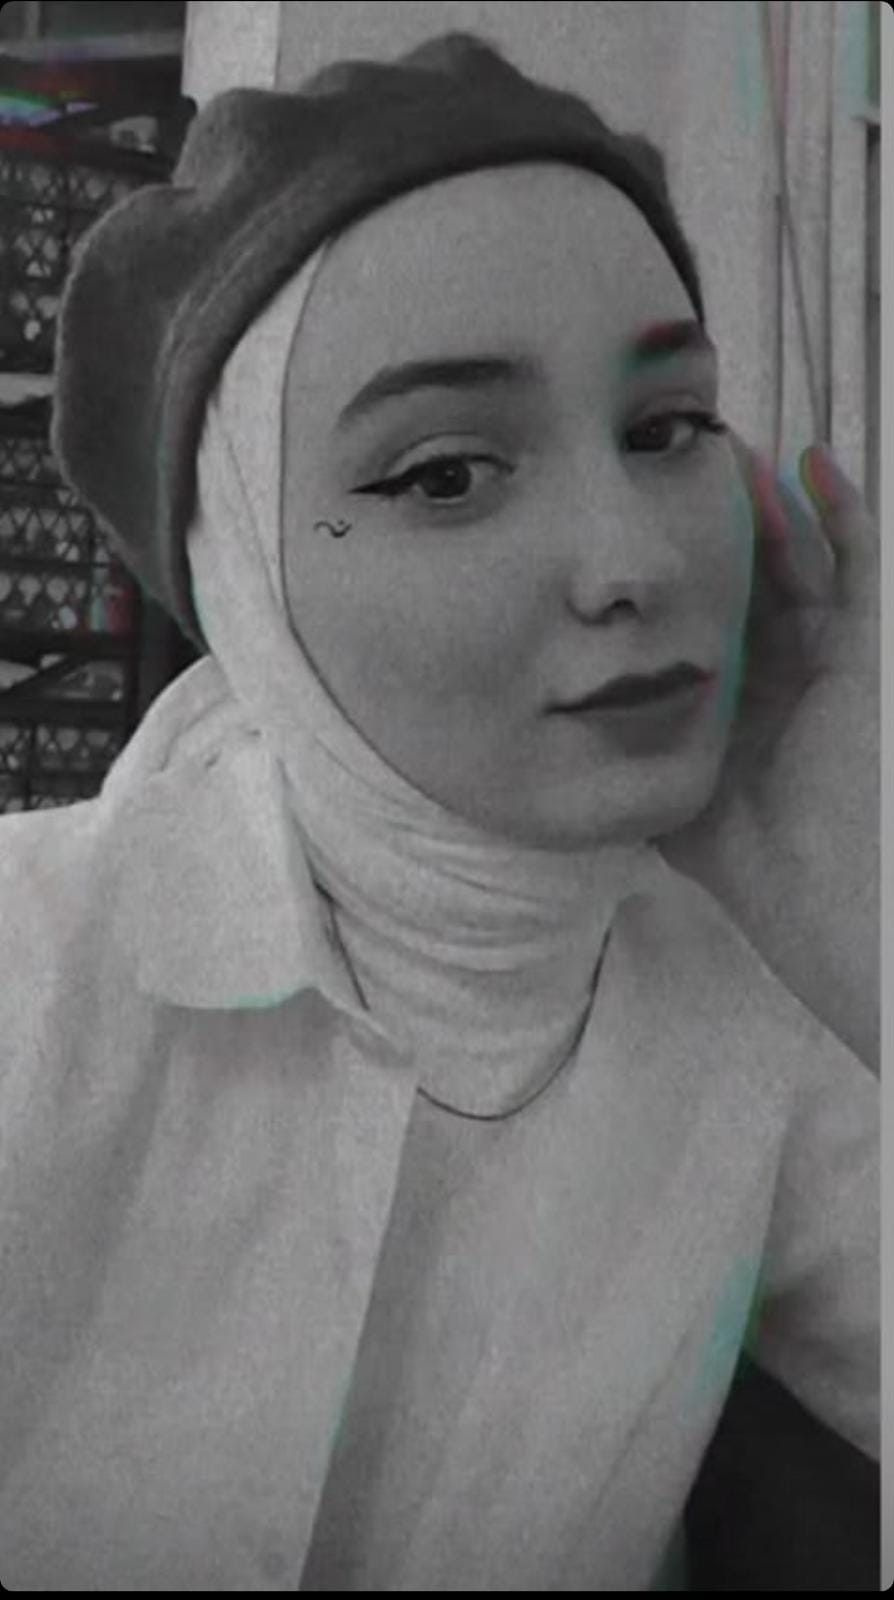 Erzurum'da karısına eşinin yasak aşk fotoğrafı gönderildi sonrası korkunç